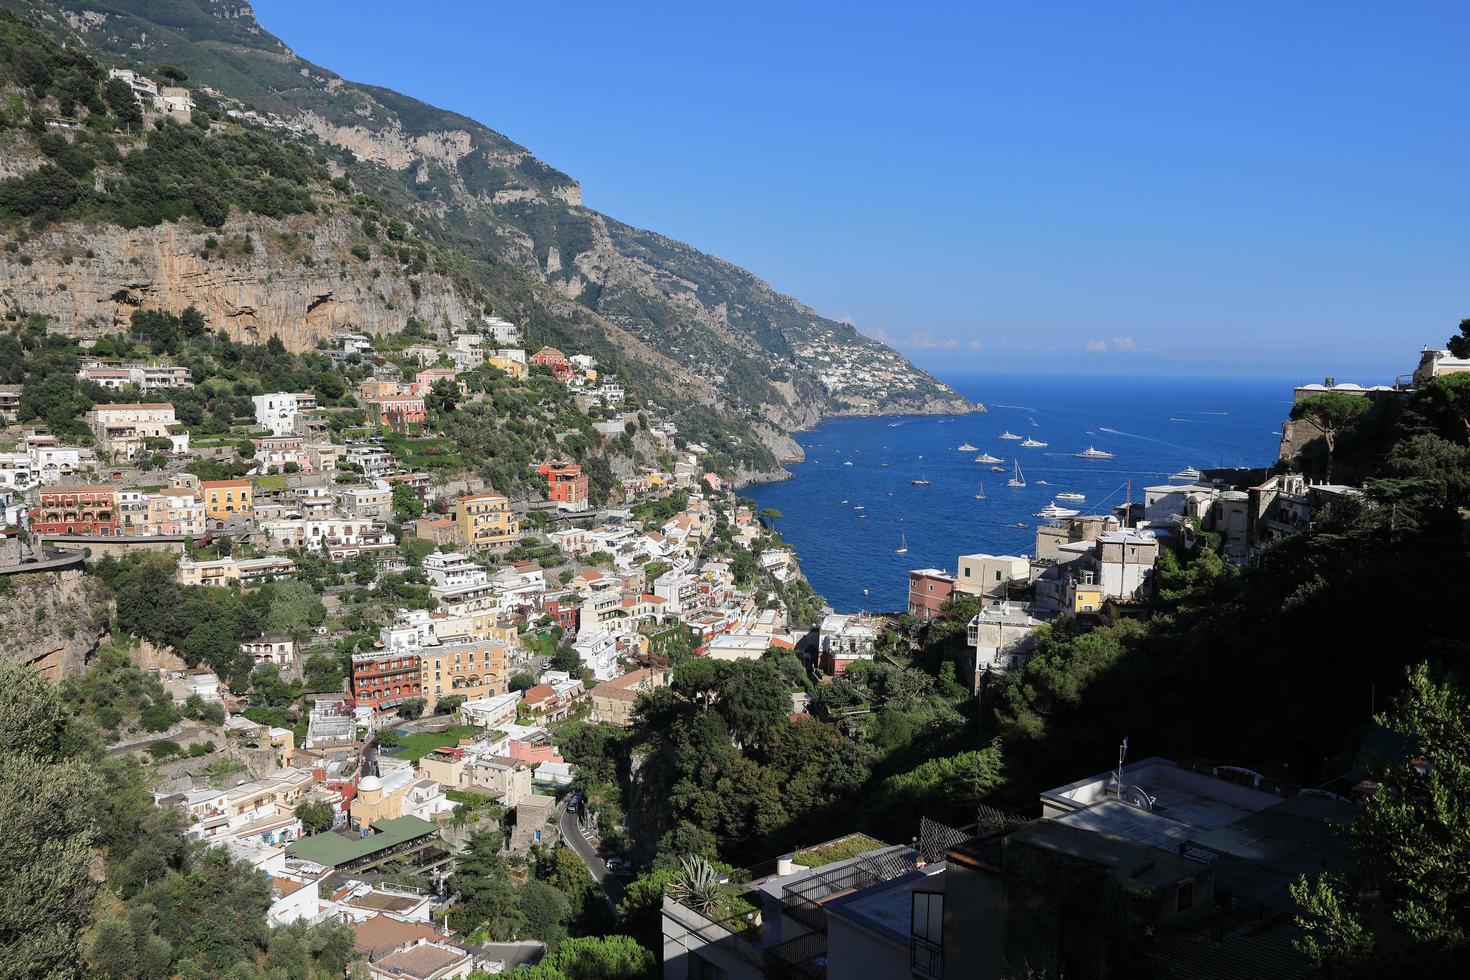 vista da bela costa de amalfi na itália foto